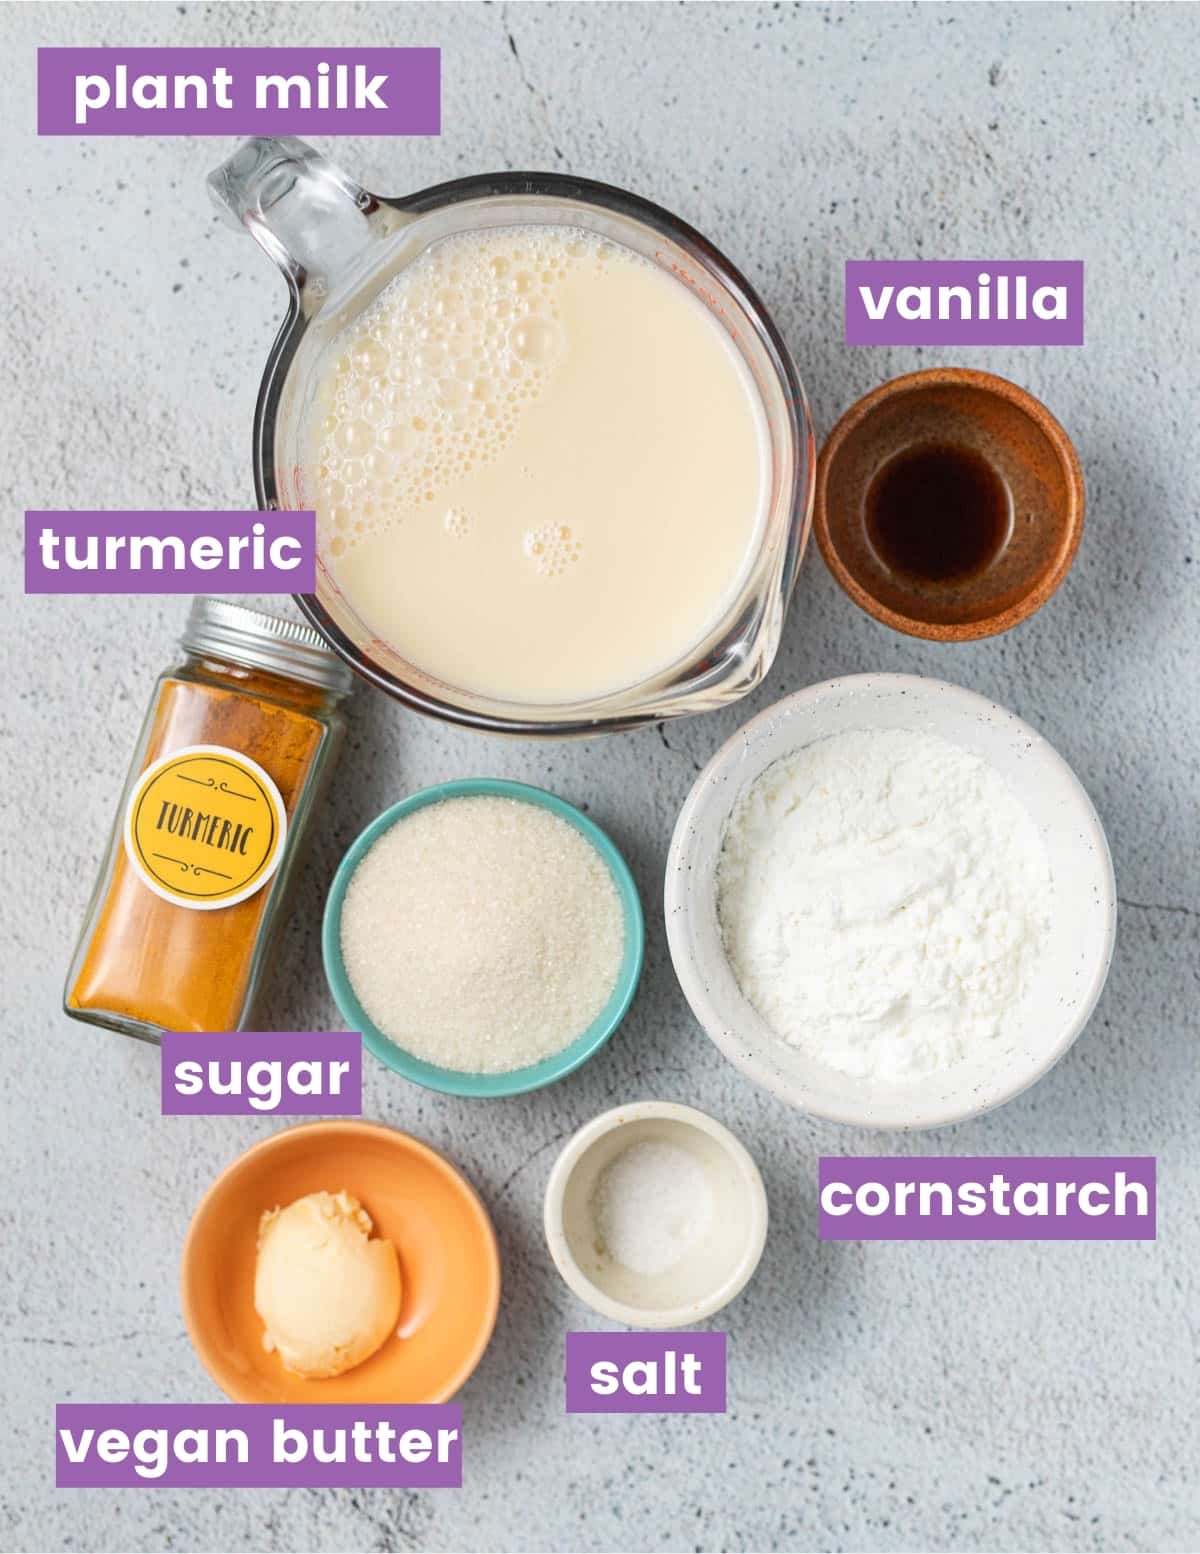 ingredients for making vegan custard as per the written ingredient list